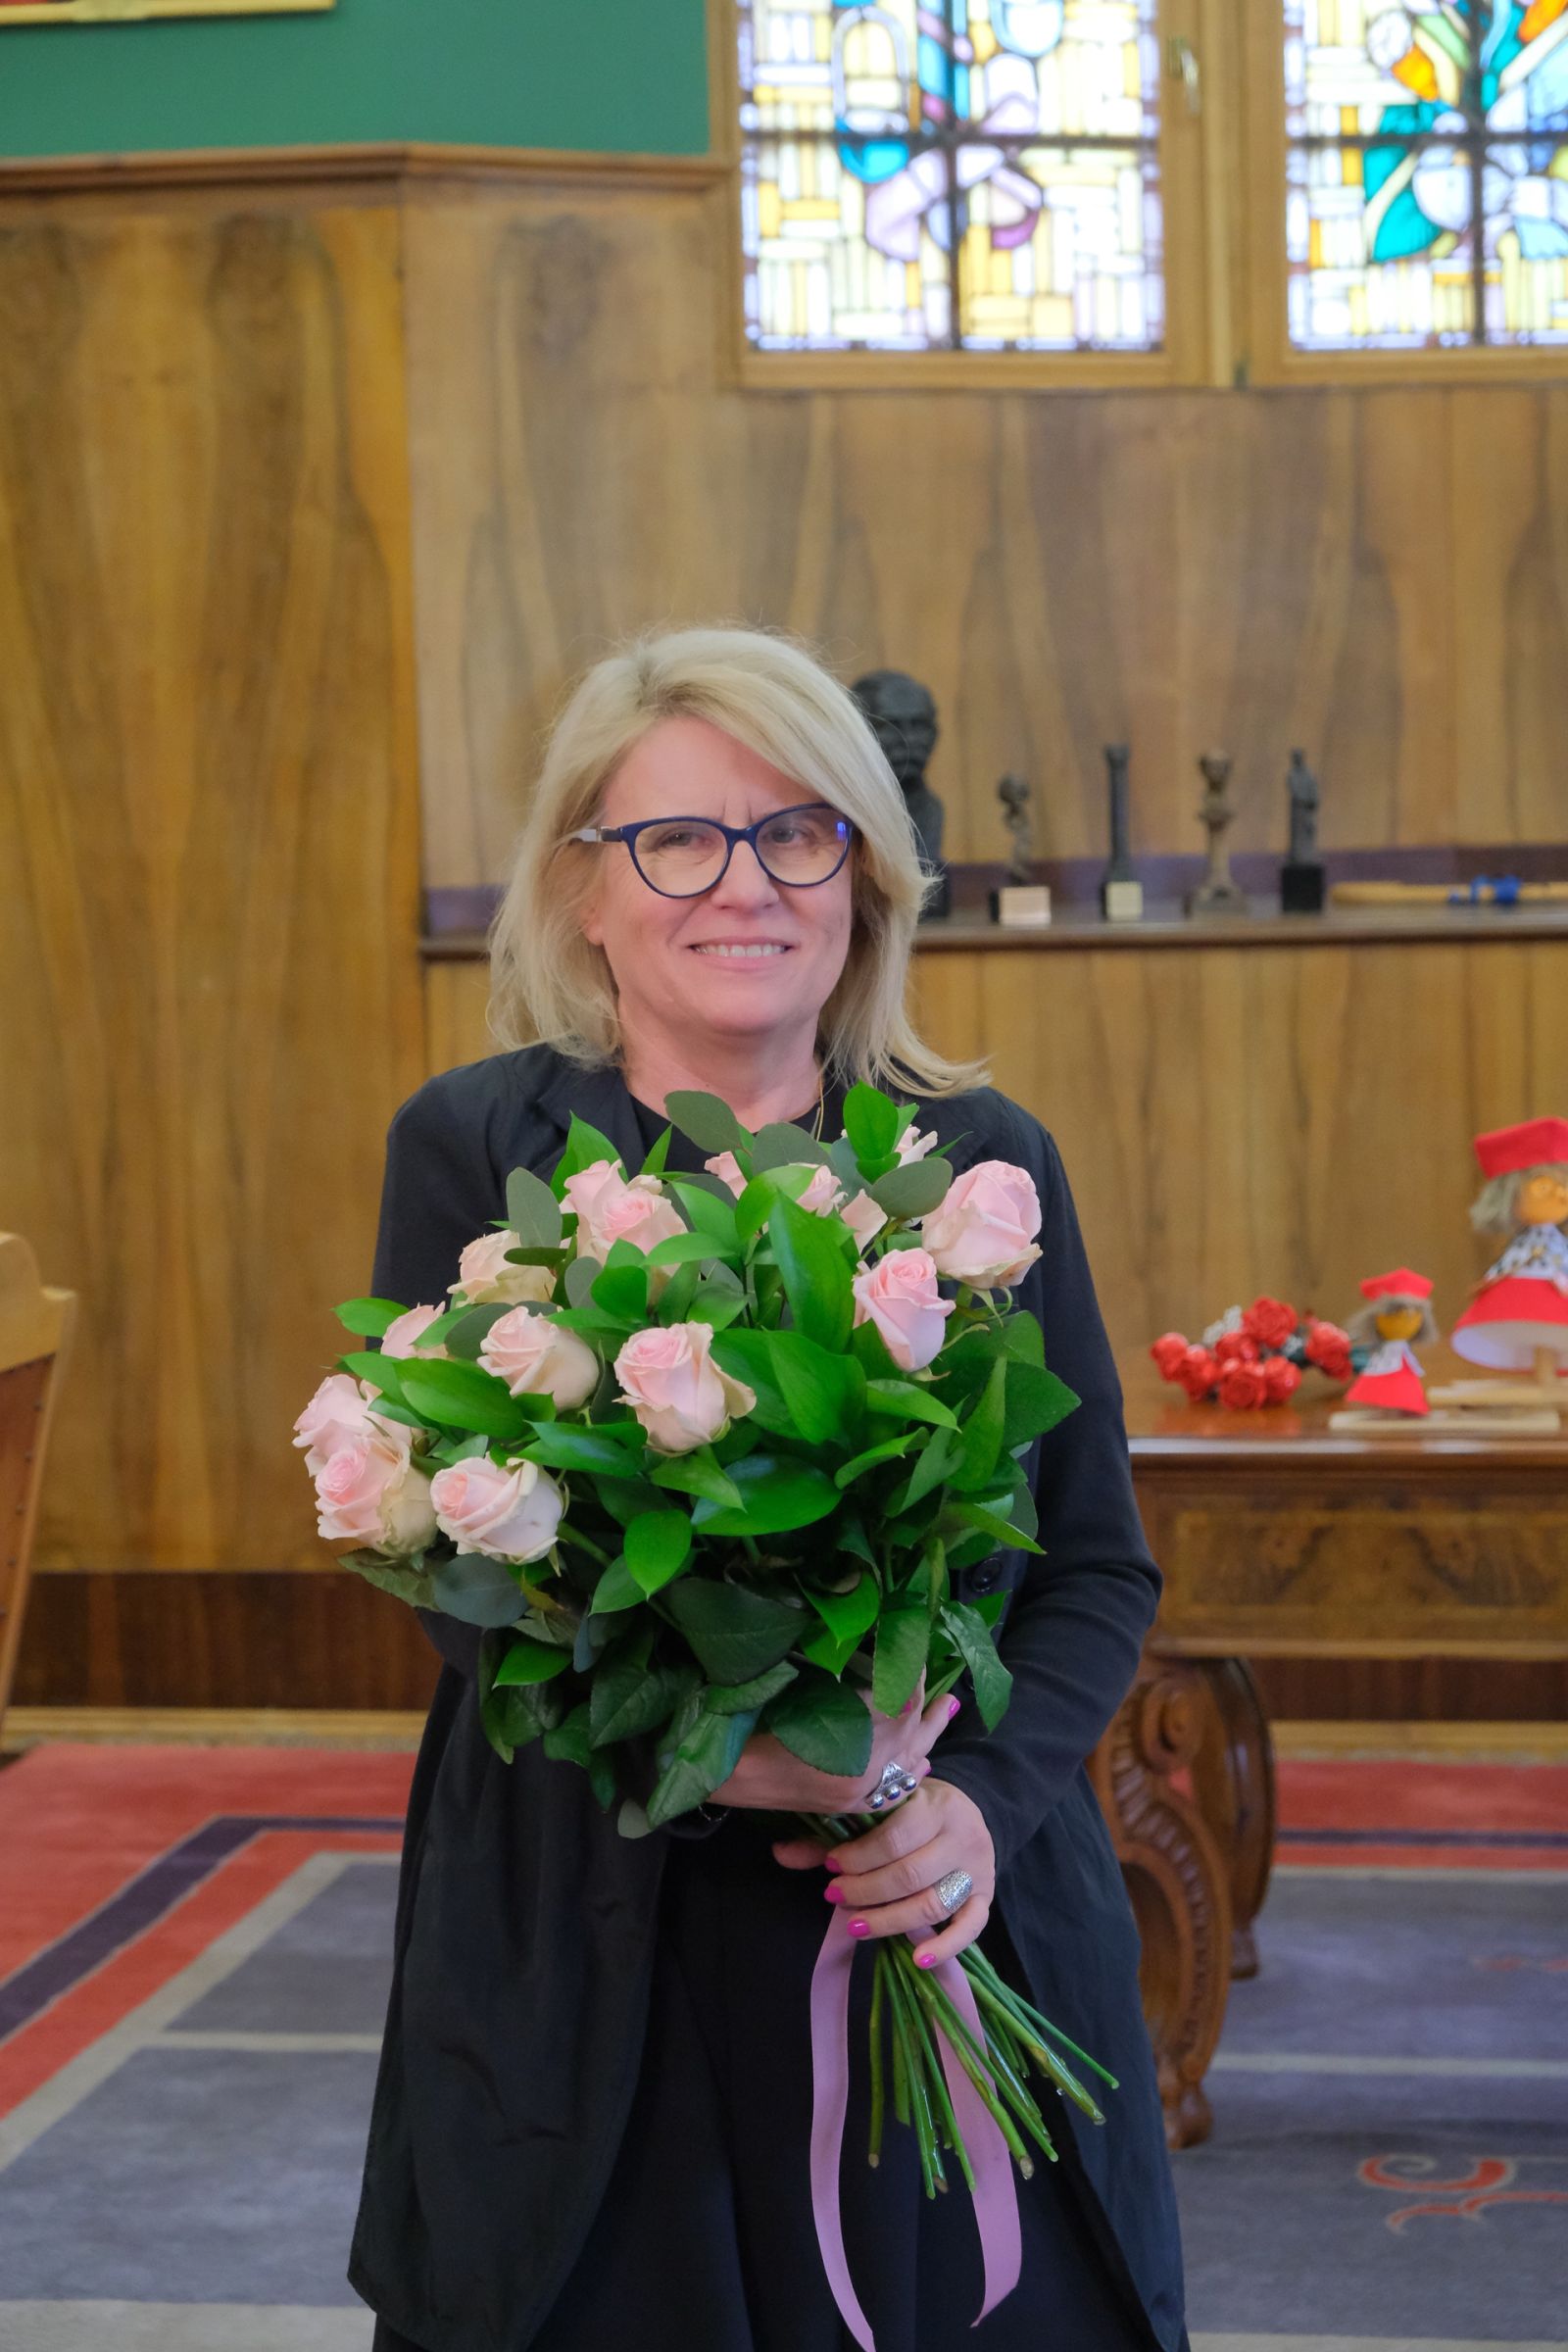 Nowo wybrana Pani Rektor w gabinecie rektorskim z bukietem różowych róż.